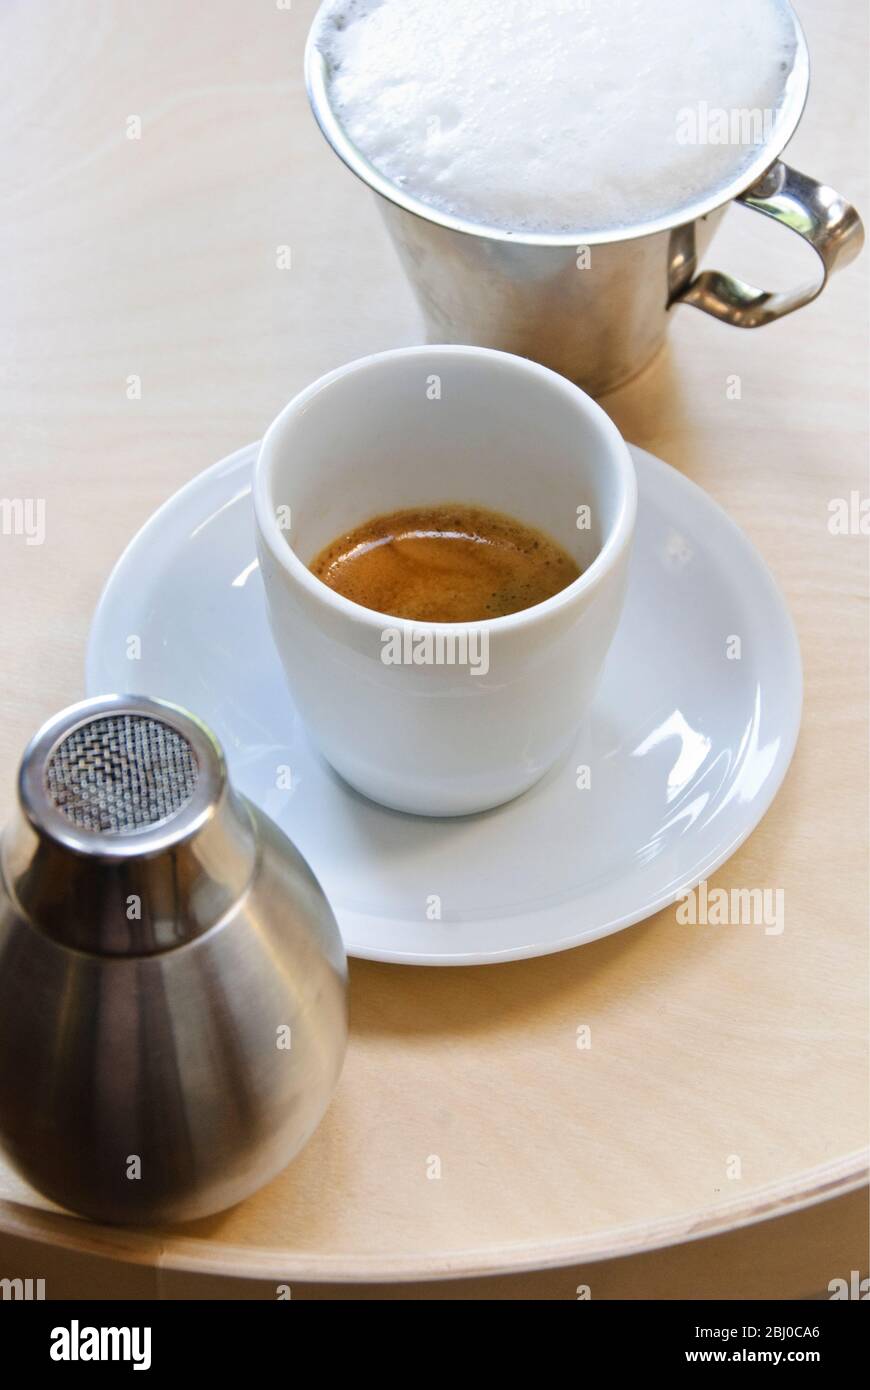 Taza de porcelana blanca de café espresso recién hecho que muestra 'crema' con espuma de leche en la jarra y el agitador de cacao, a punto de convertir el espresso en capp Foto de stock